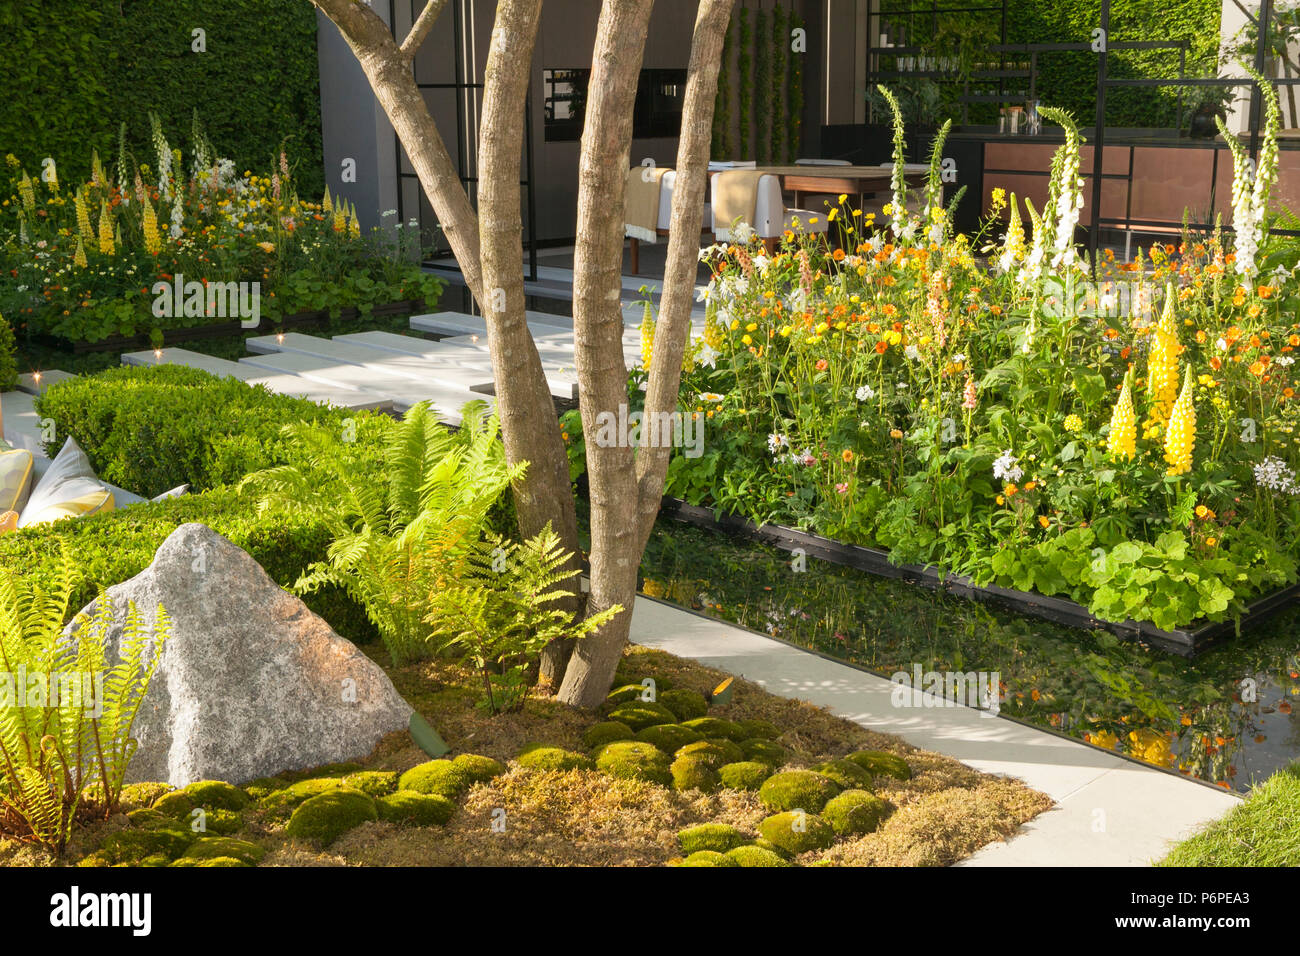 La LG Eco-City giardino giardino mostra al RHS Chelsea Flower Show 2018. Progettato da Hay-Joung Hwang. Costruito da Randle Siddeley. Sponsorizzato da LG. Foto Stock